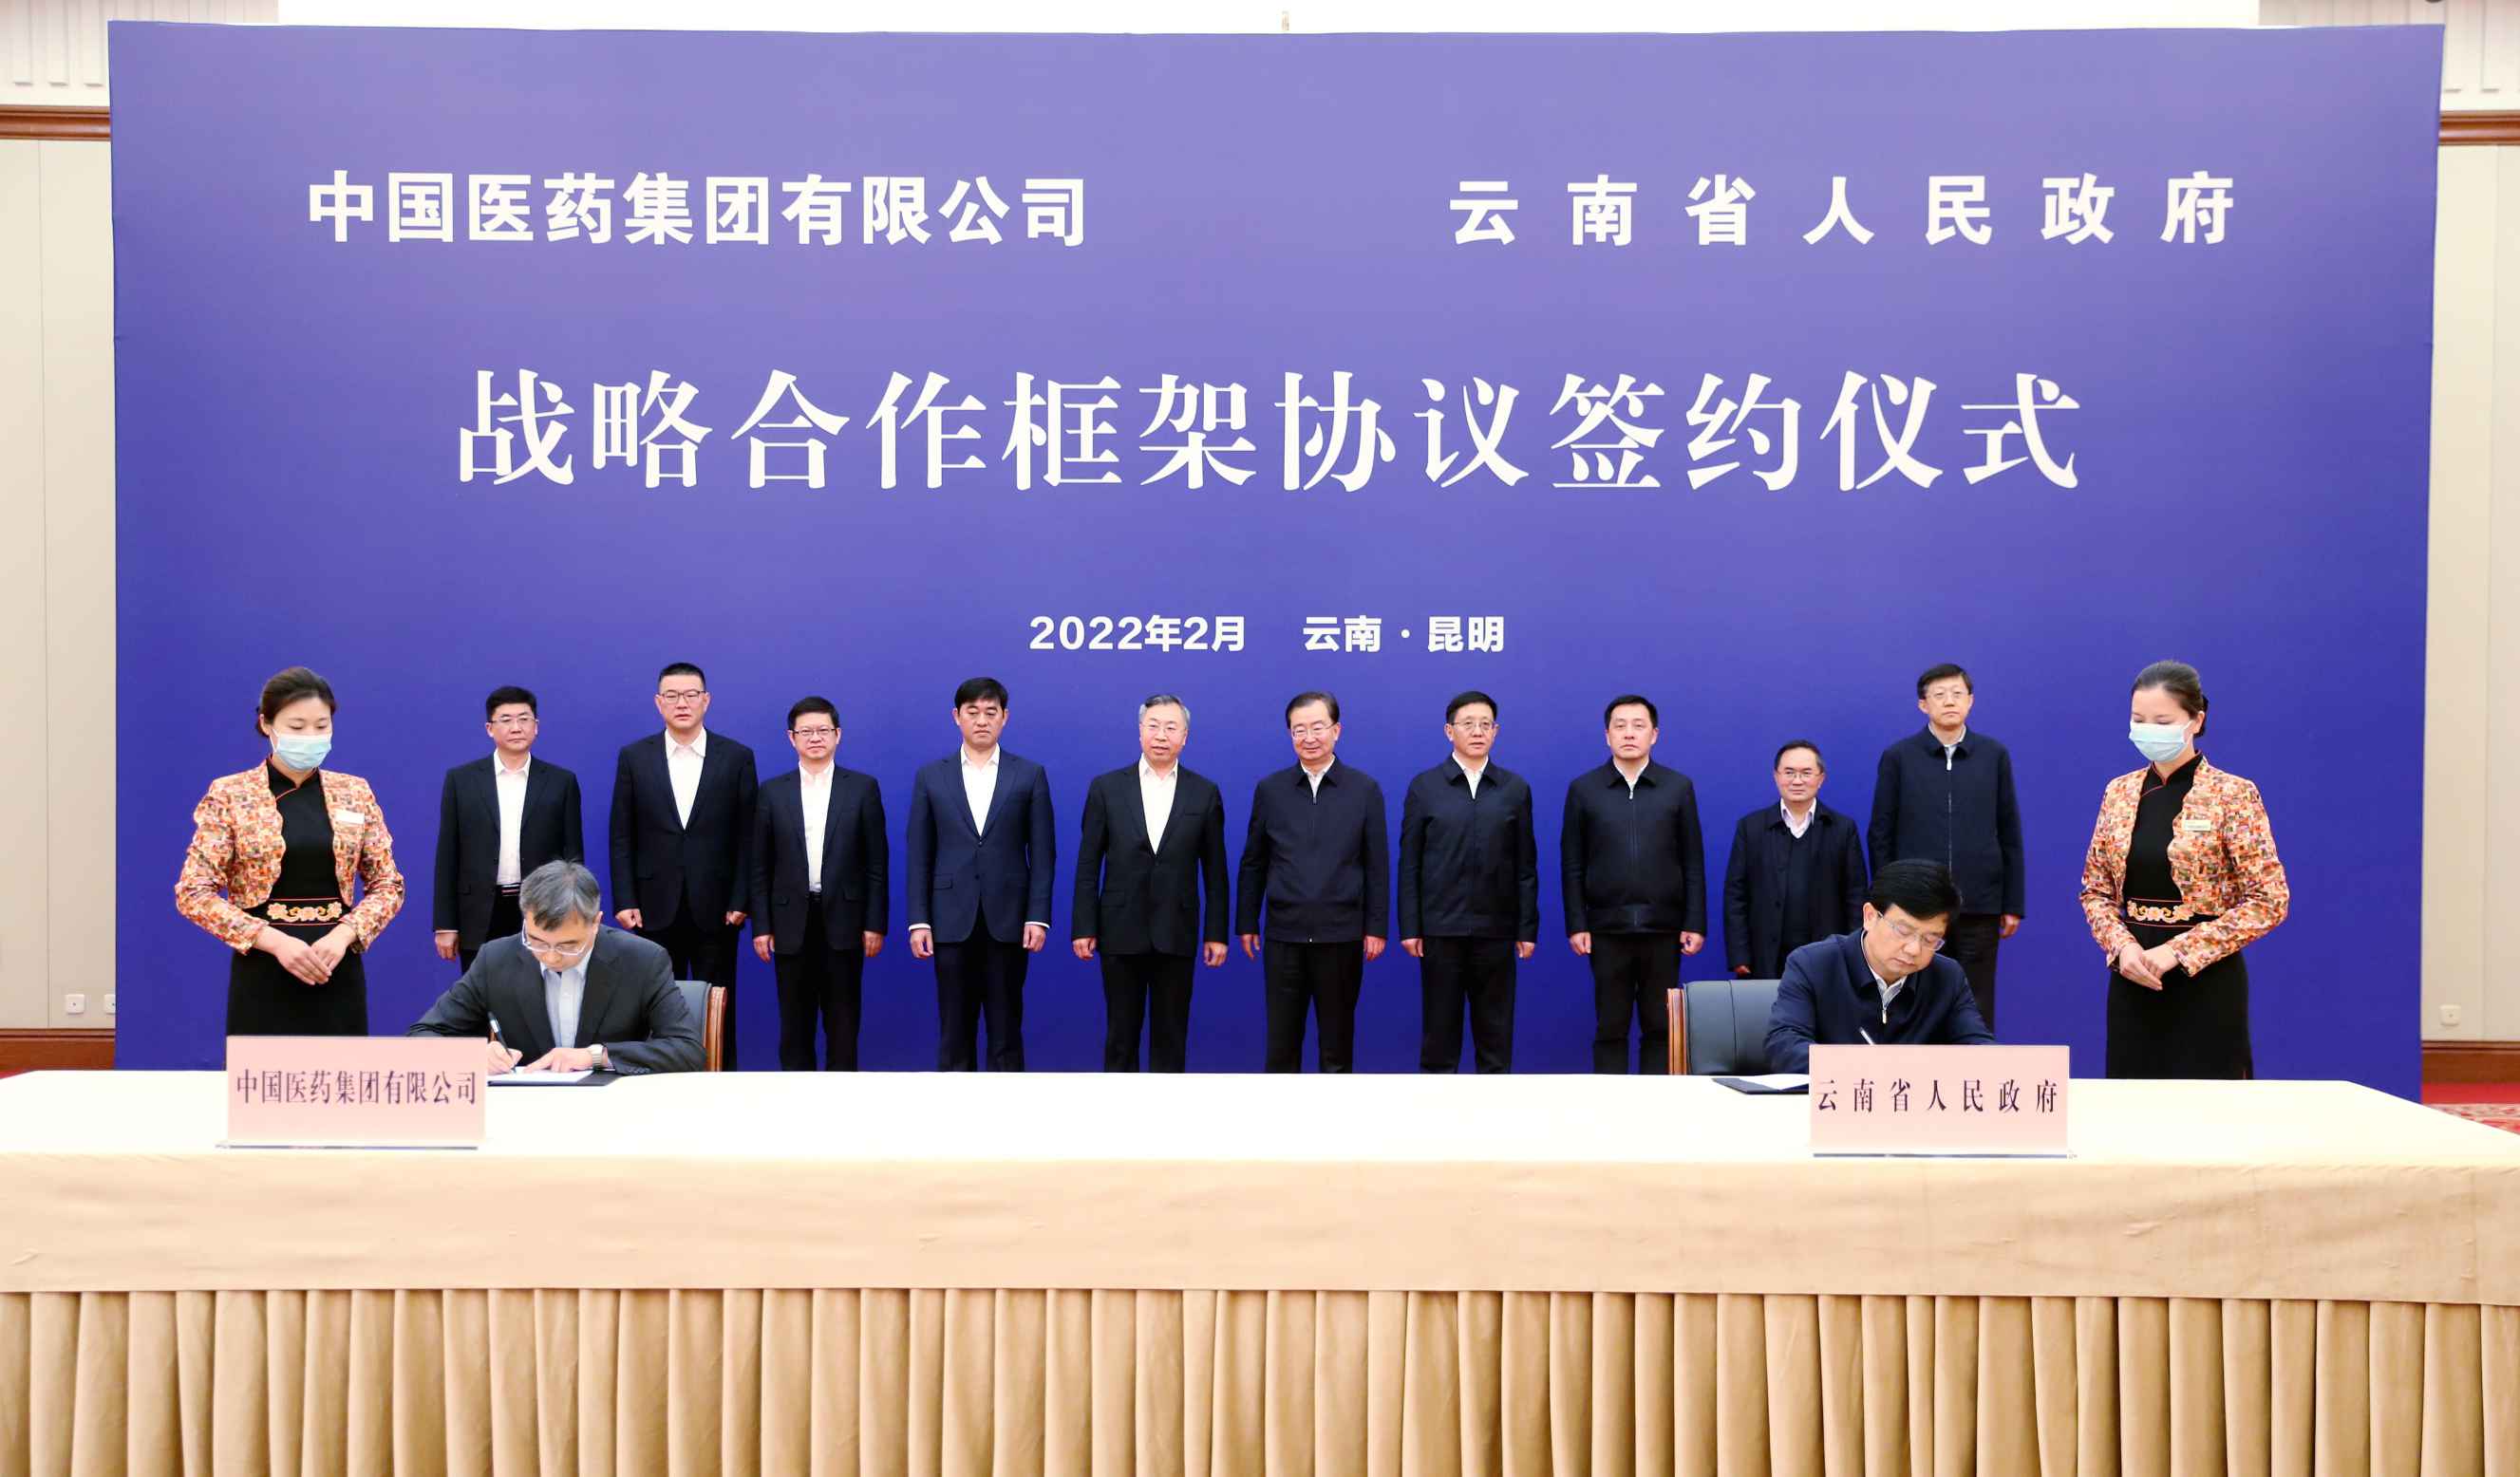 2022年2月27日，币游国际与云南省人民政府签署战略合作框架协议